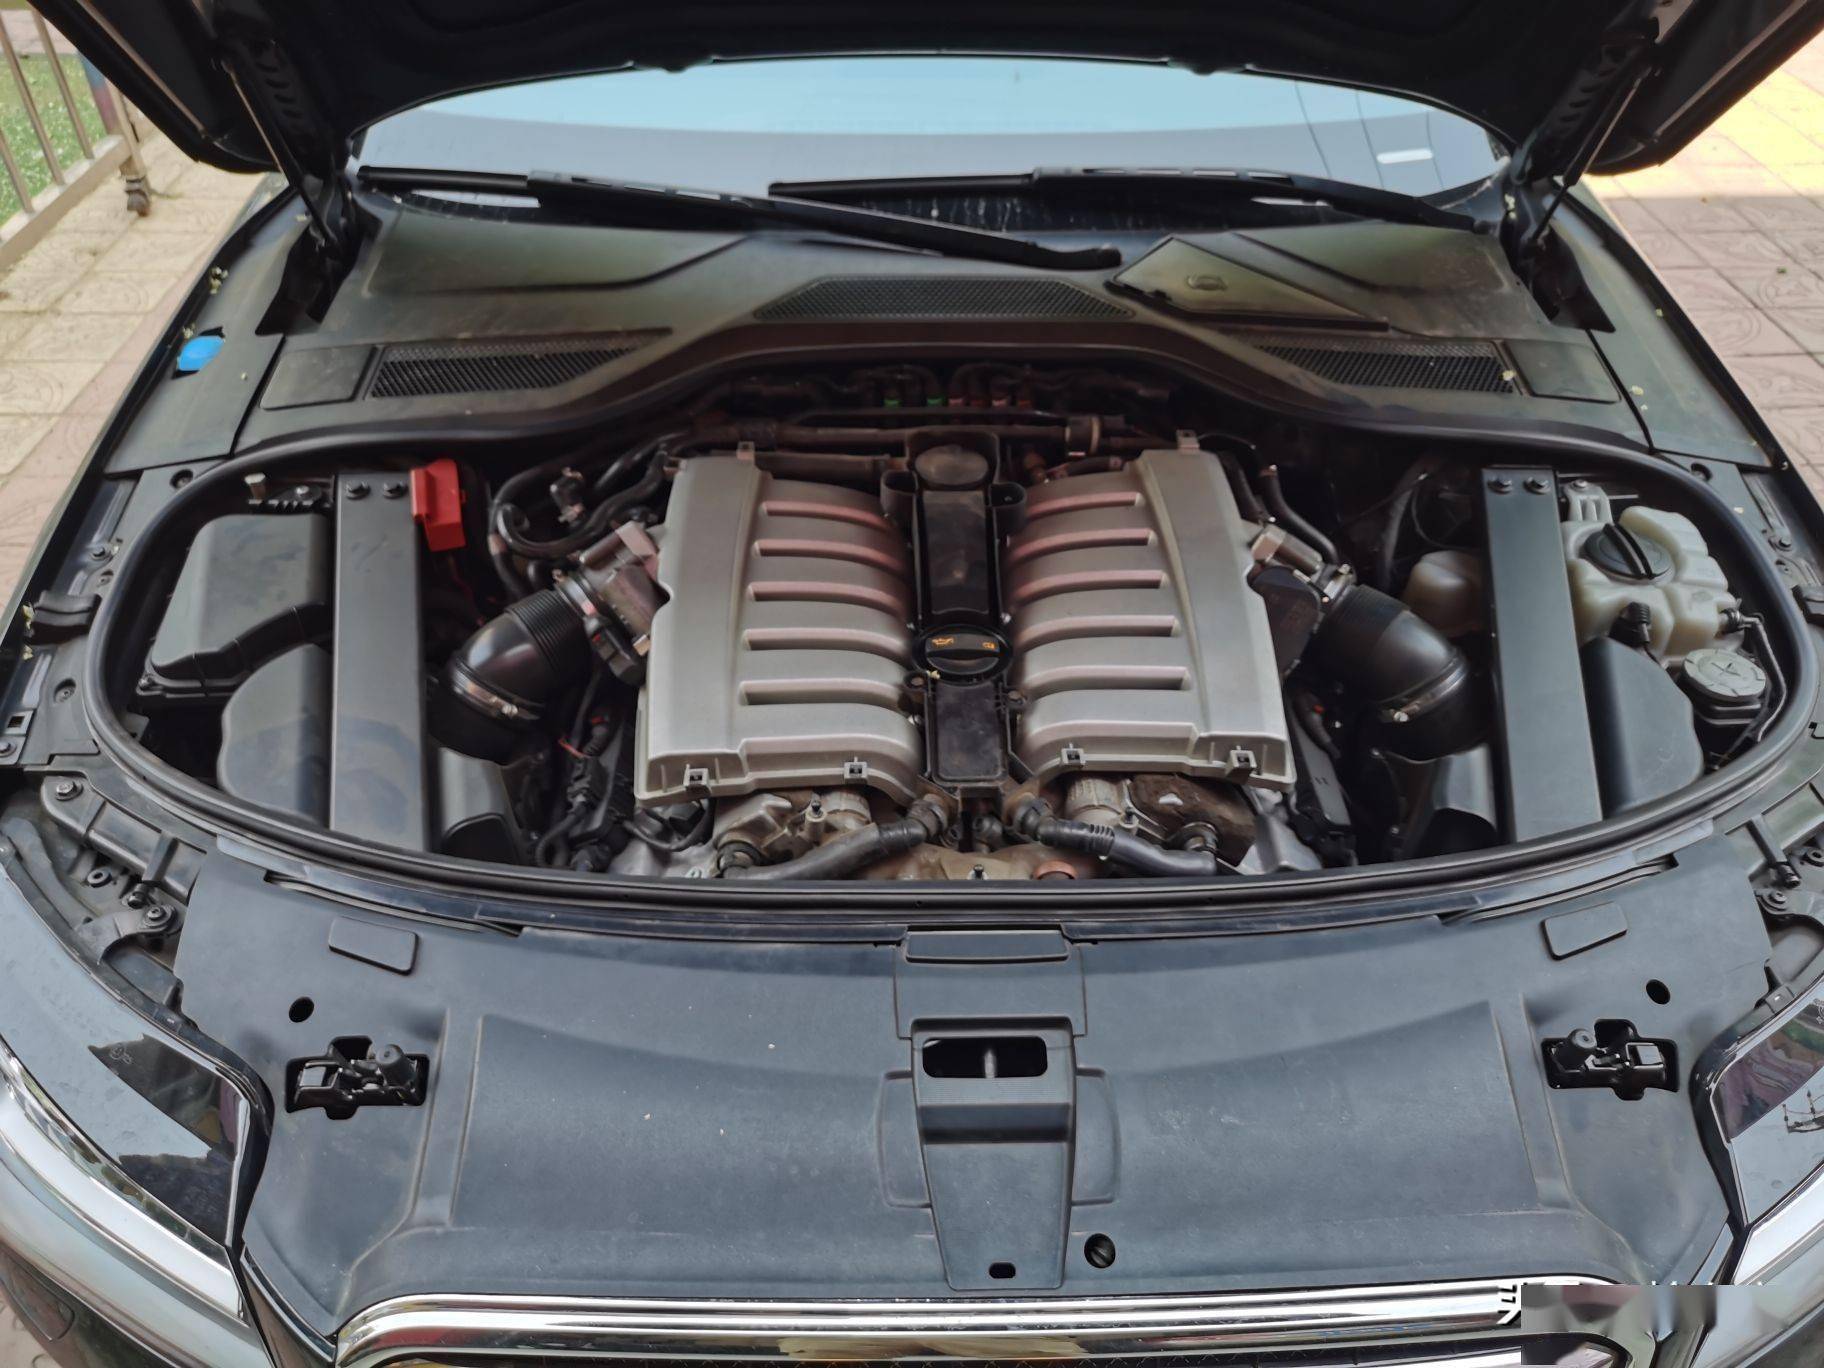 1,奥迪a8车型中有一款搭载了w12引擎,这款引擎实际上是两个v6发动机的